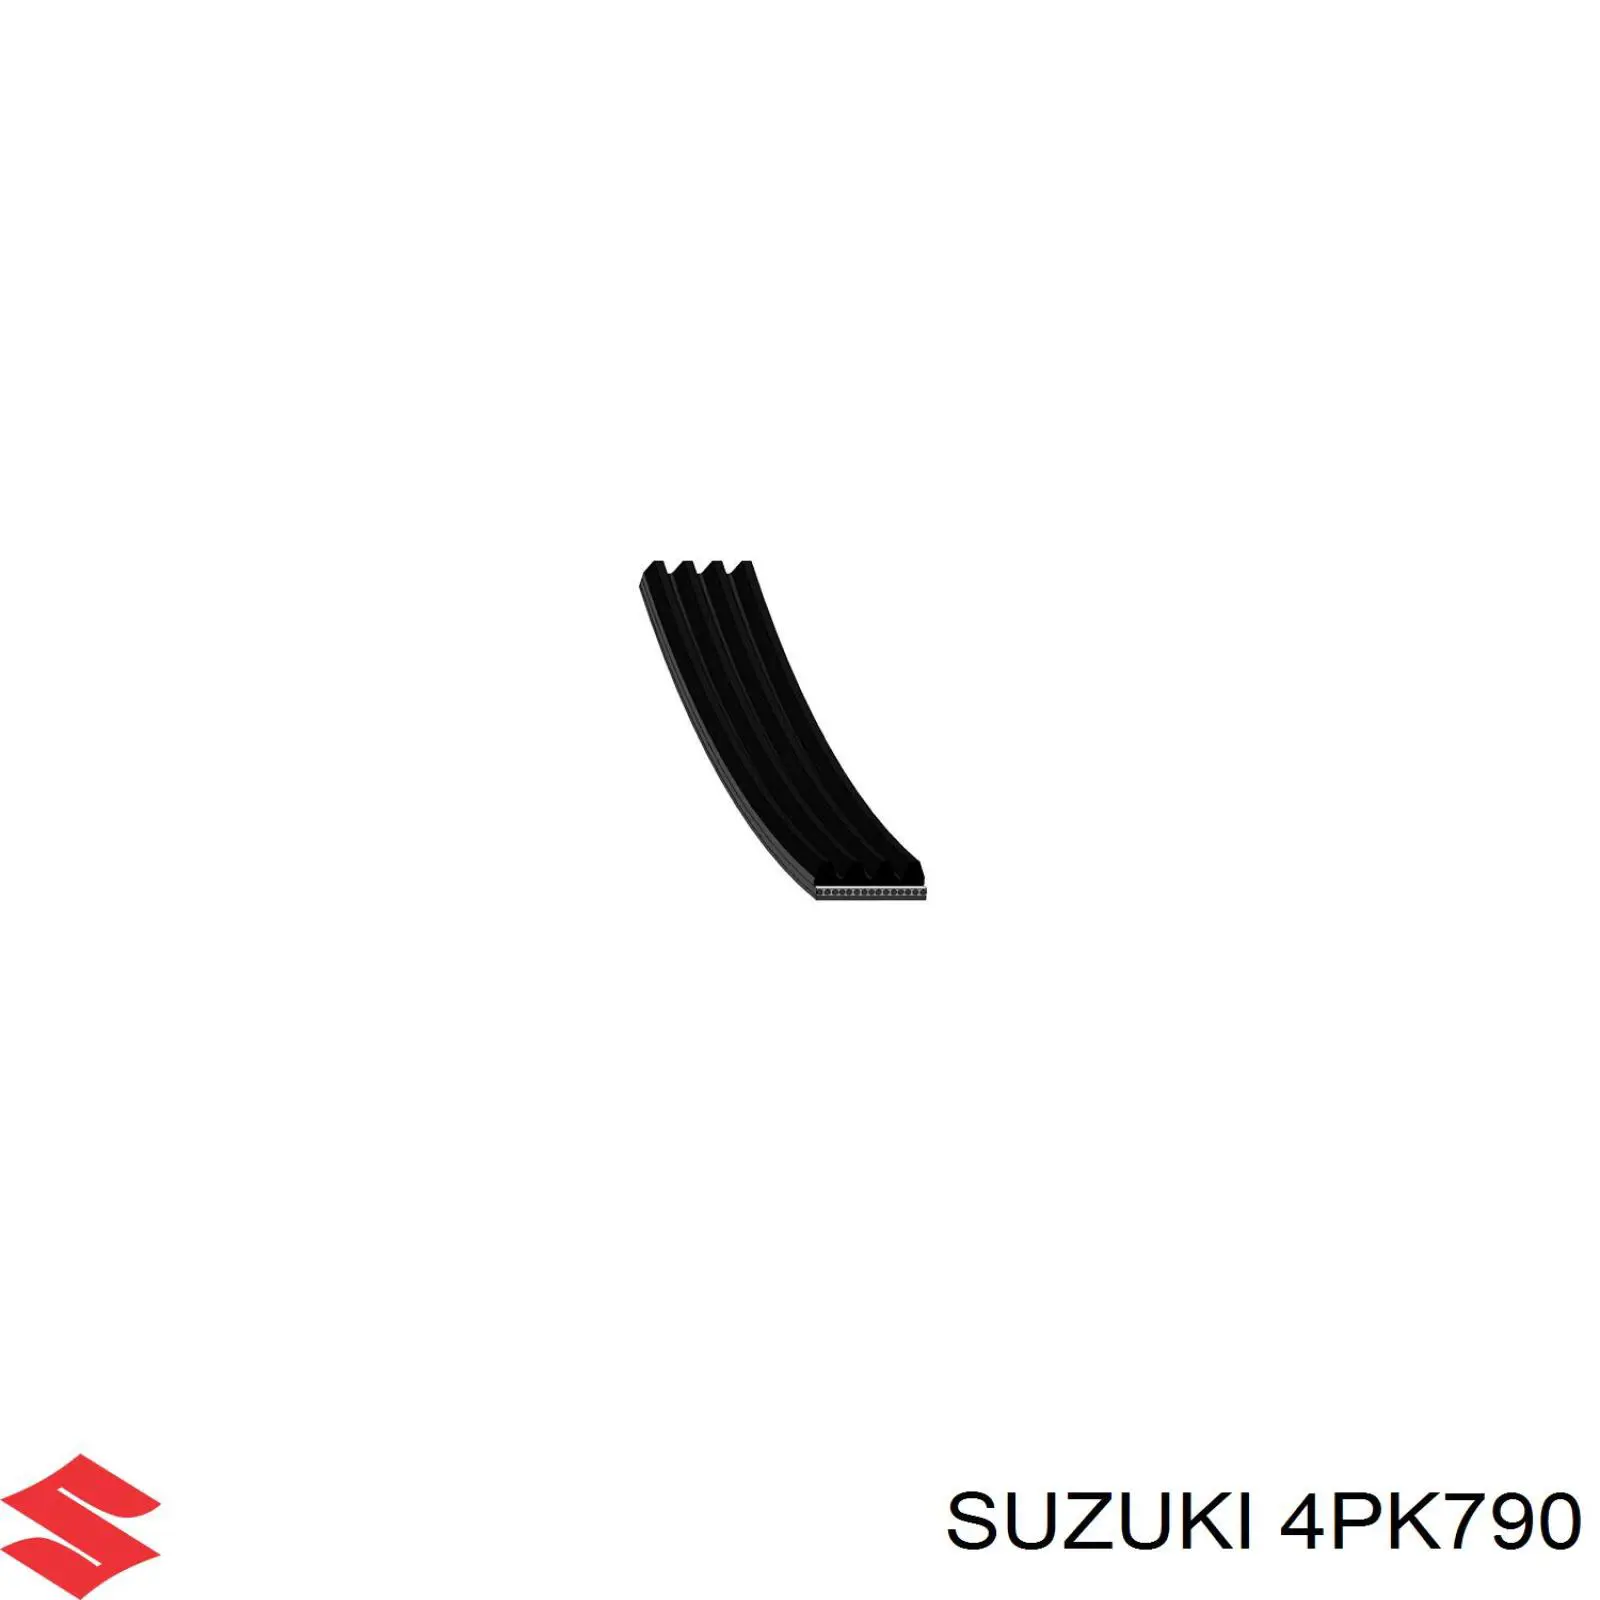 4PK790 Suzuki correa trapezoidal